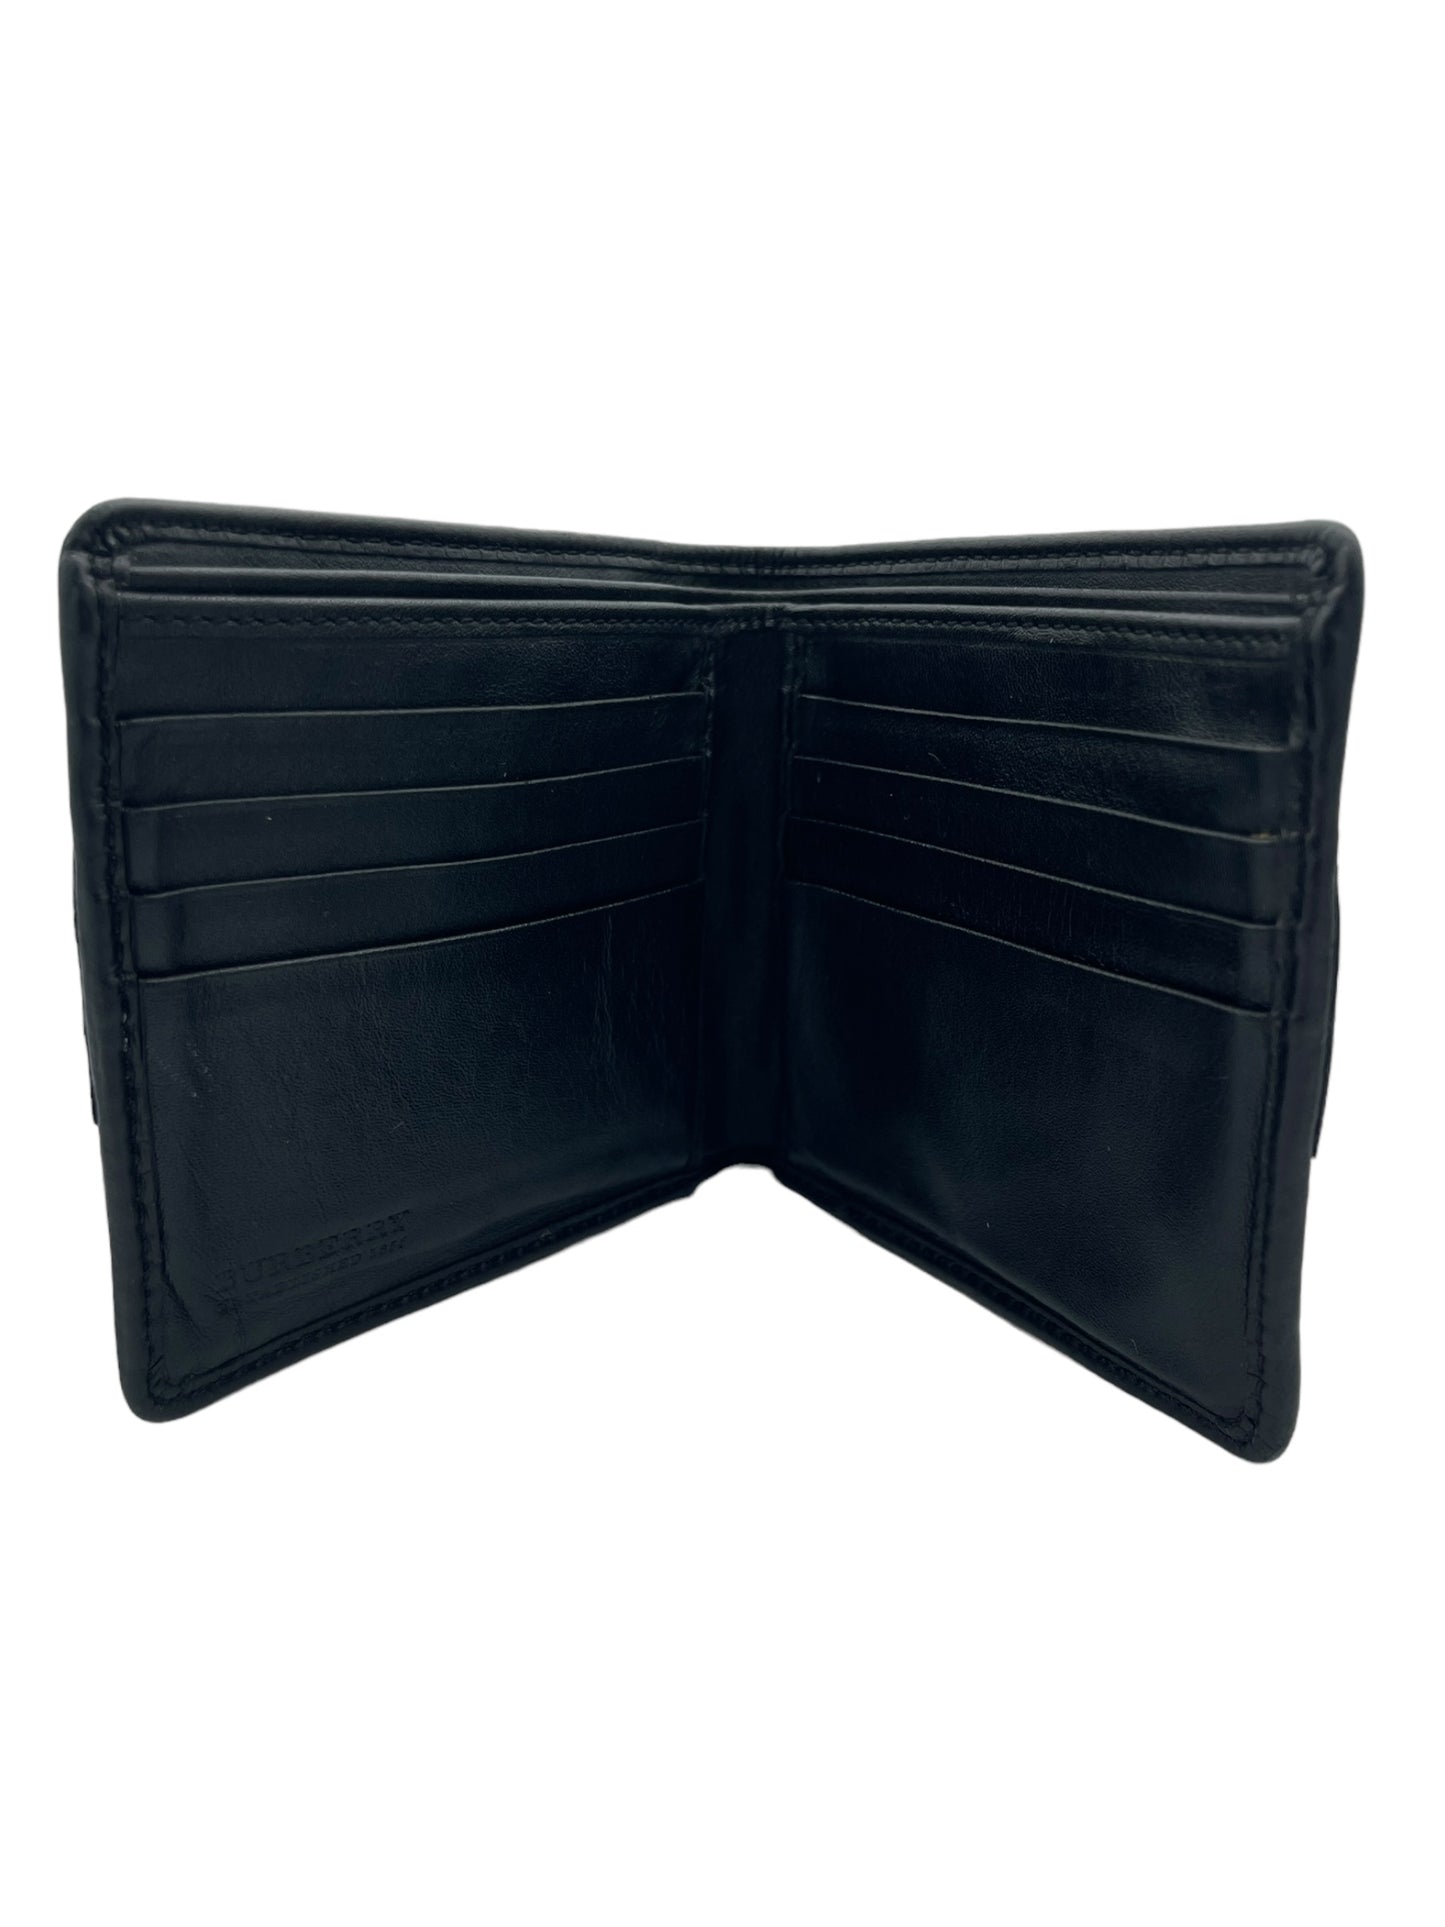 Burberry - Bifold Men’s Wallet in Black 0454597